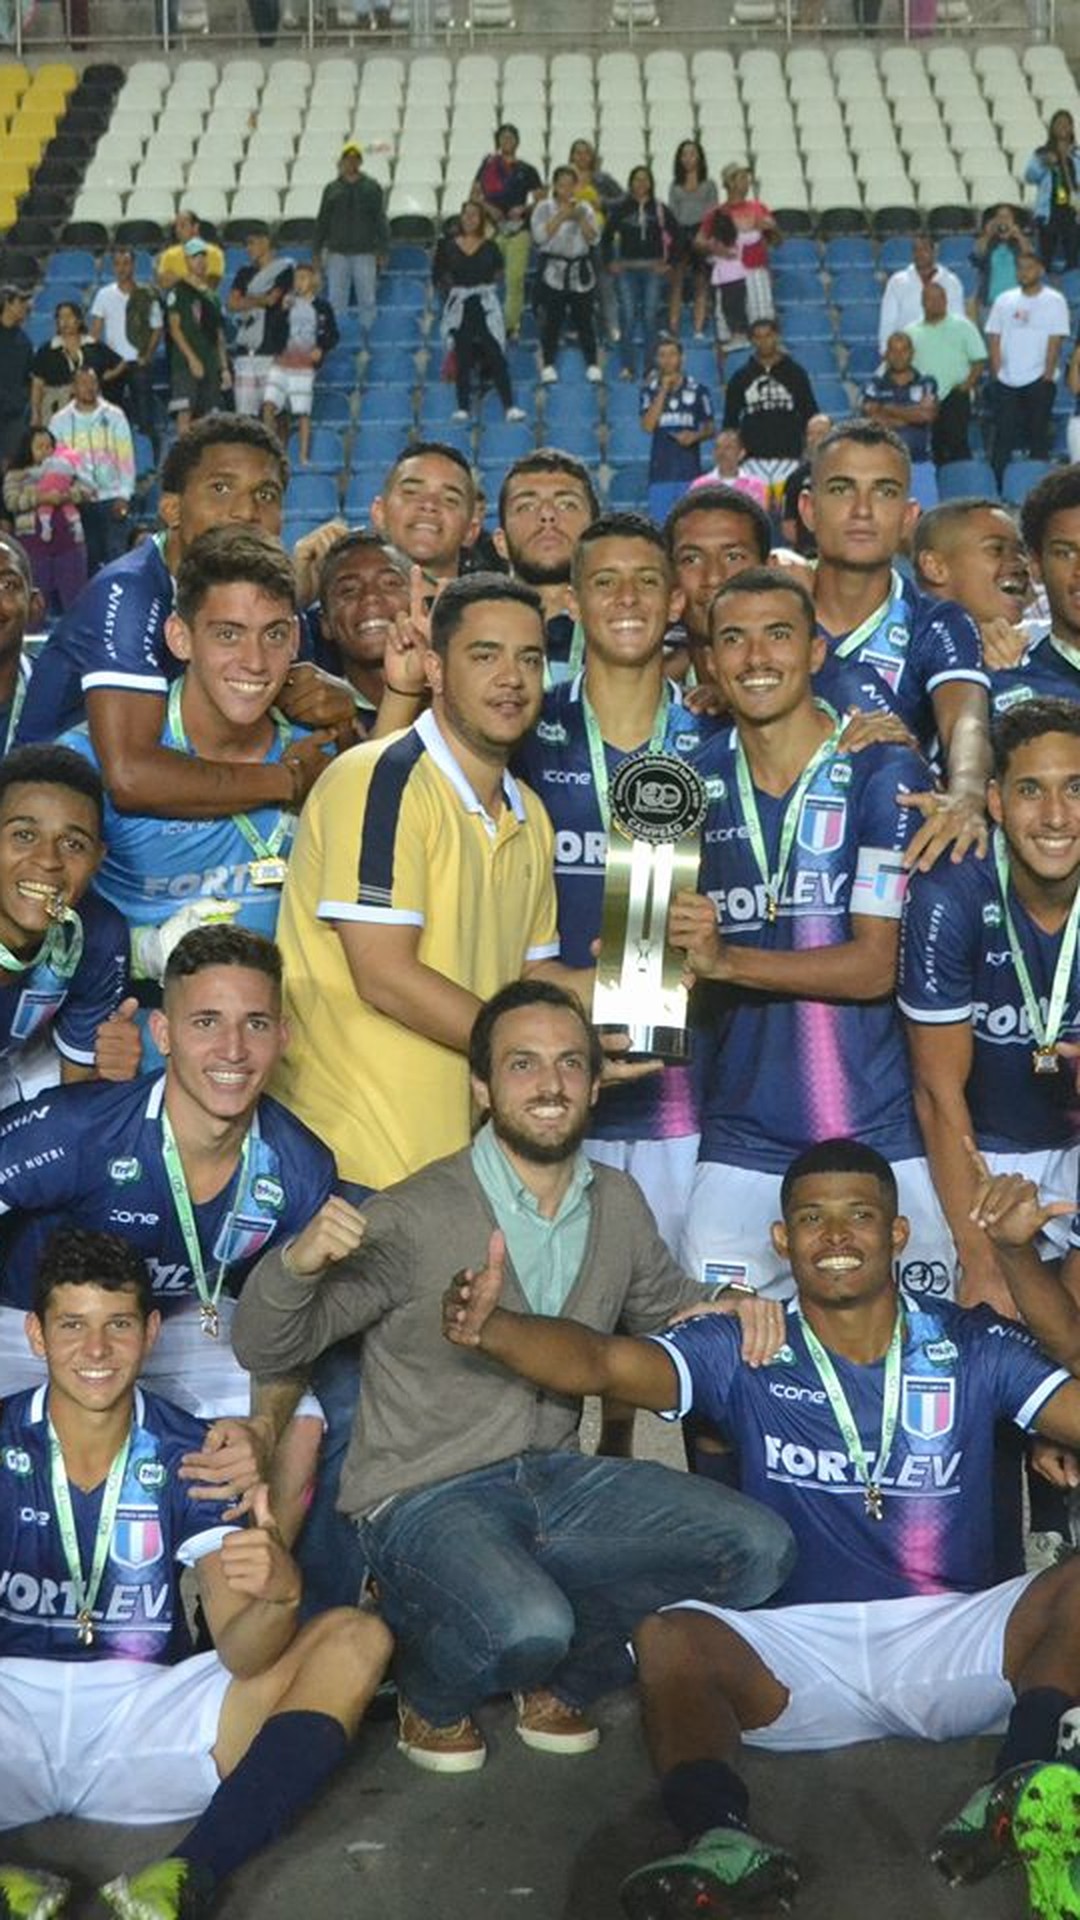 As promessas: conheça 12 jogadores para ficar de olho na Copinha 2023, copa  sp de futebol júnior